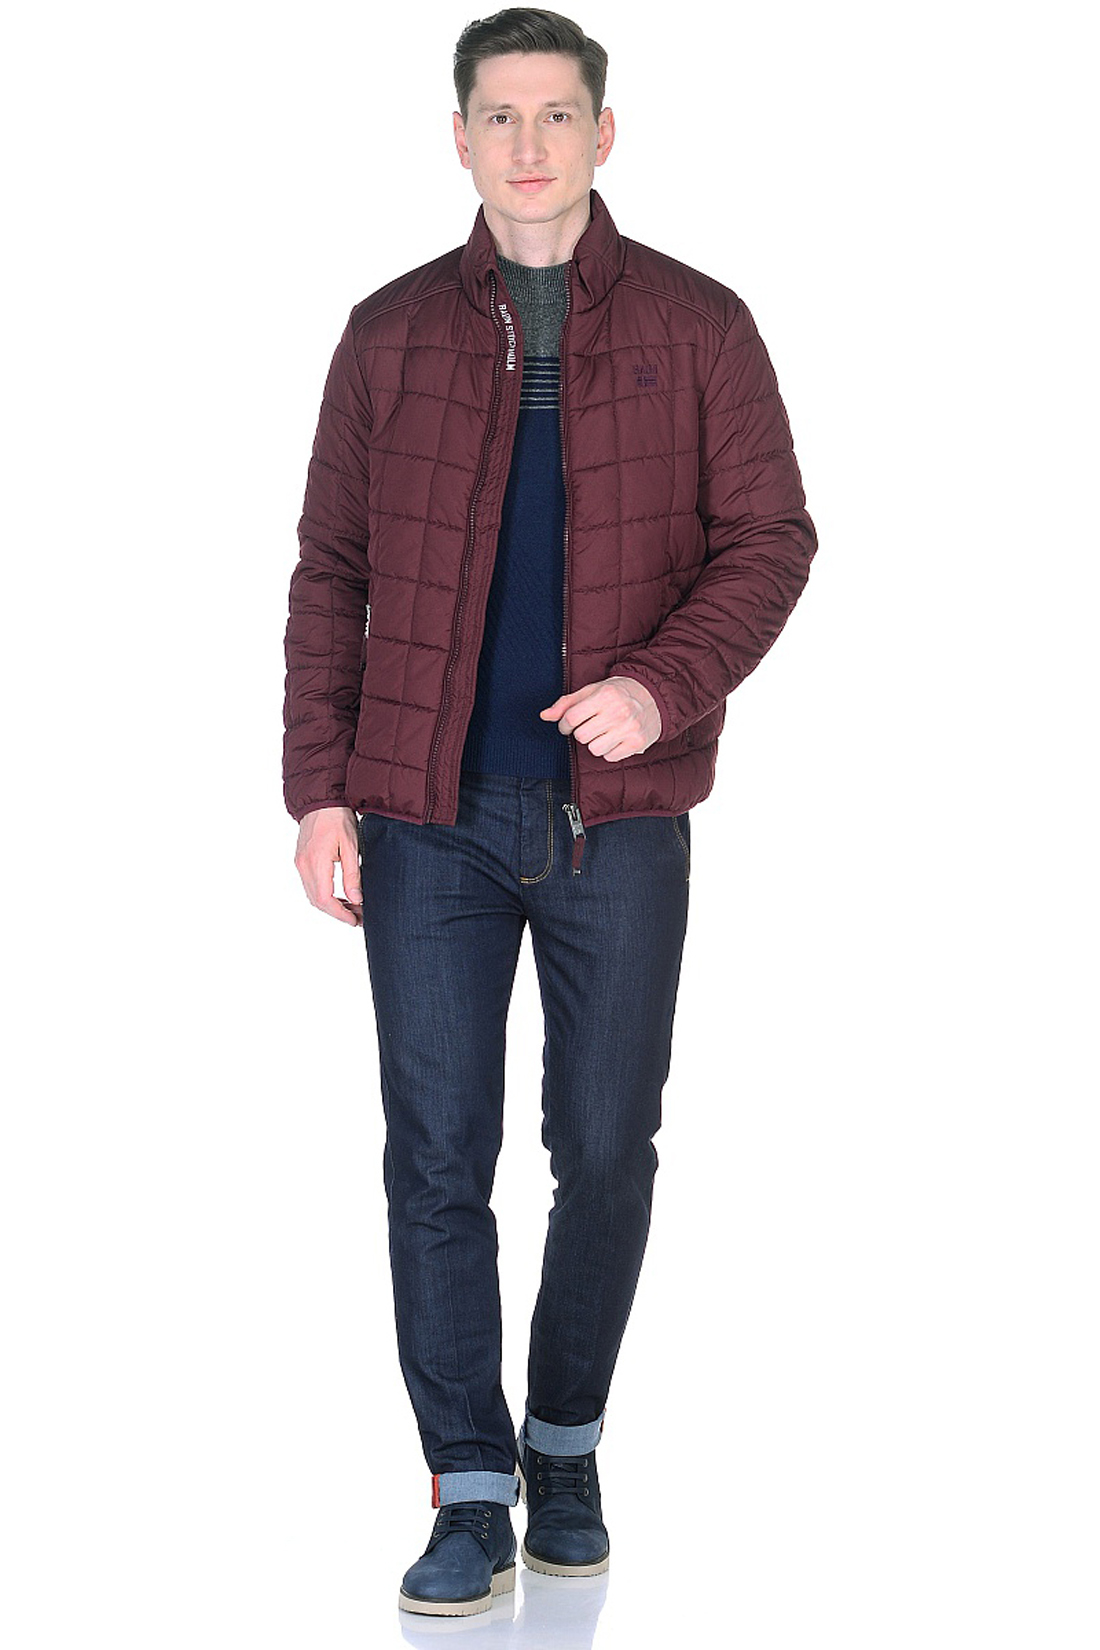 Куртка с квадратной простёжкой (арт. baon B538012), размер 3XL, цвет бордовый Куртка с квадратной простёжкой (арт. baon B538012) - фото 4